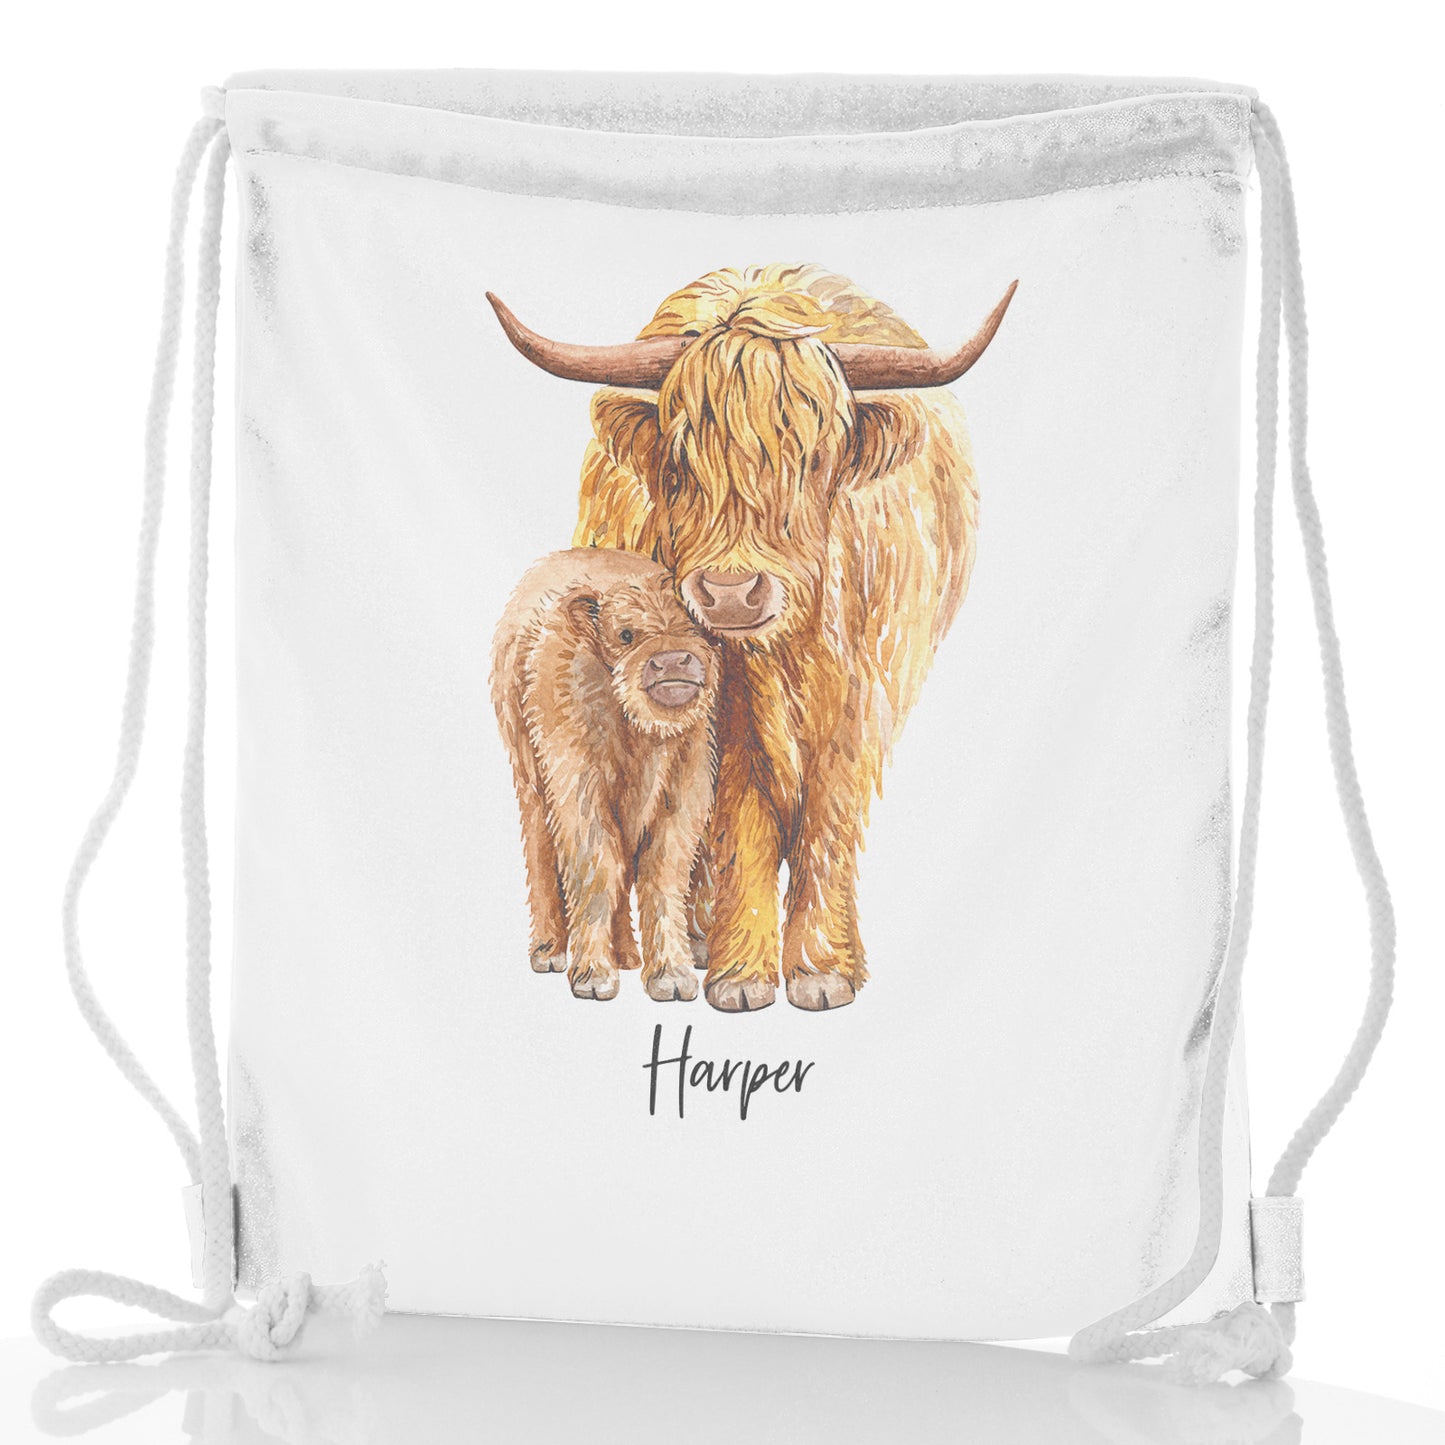 Personalisierter Glitzer-Rucksack mit Kordelzug, Begrüßungstext und entspannenden Highland-Kühen für Mama und Baby